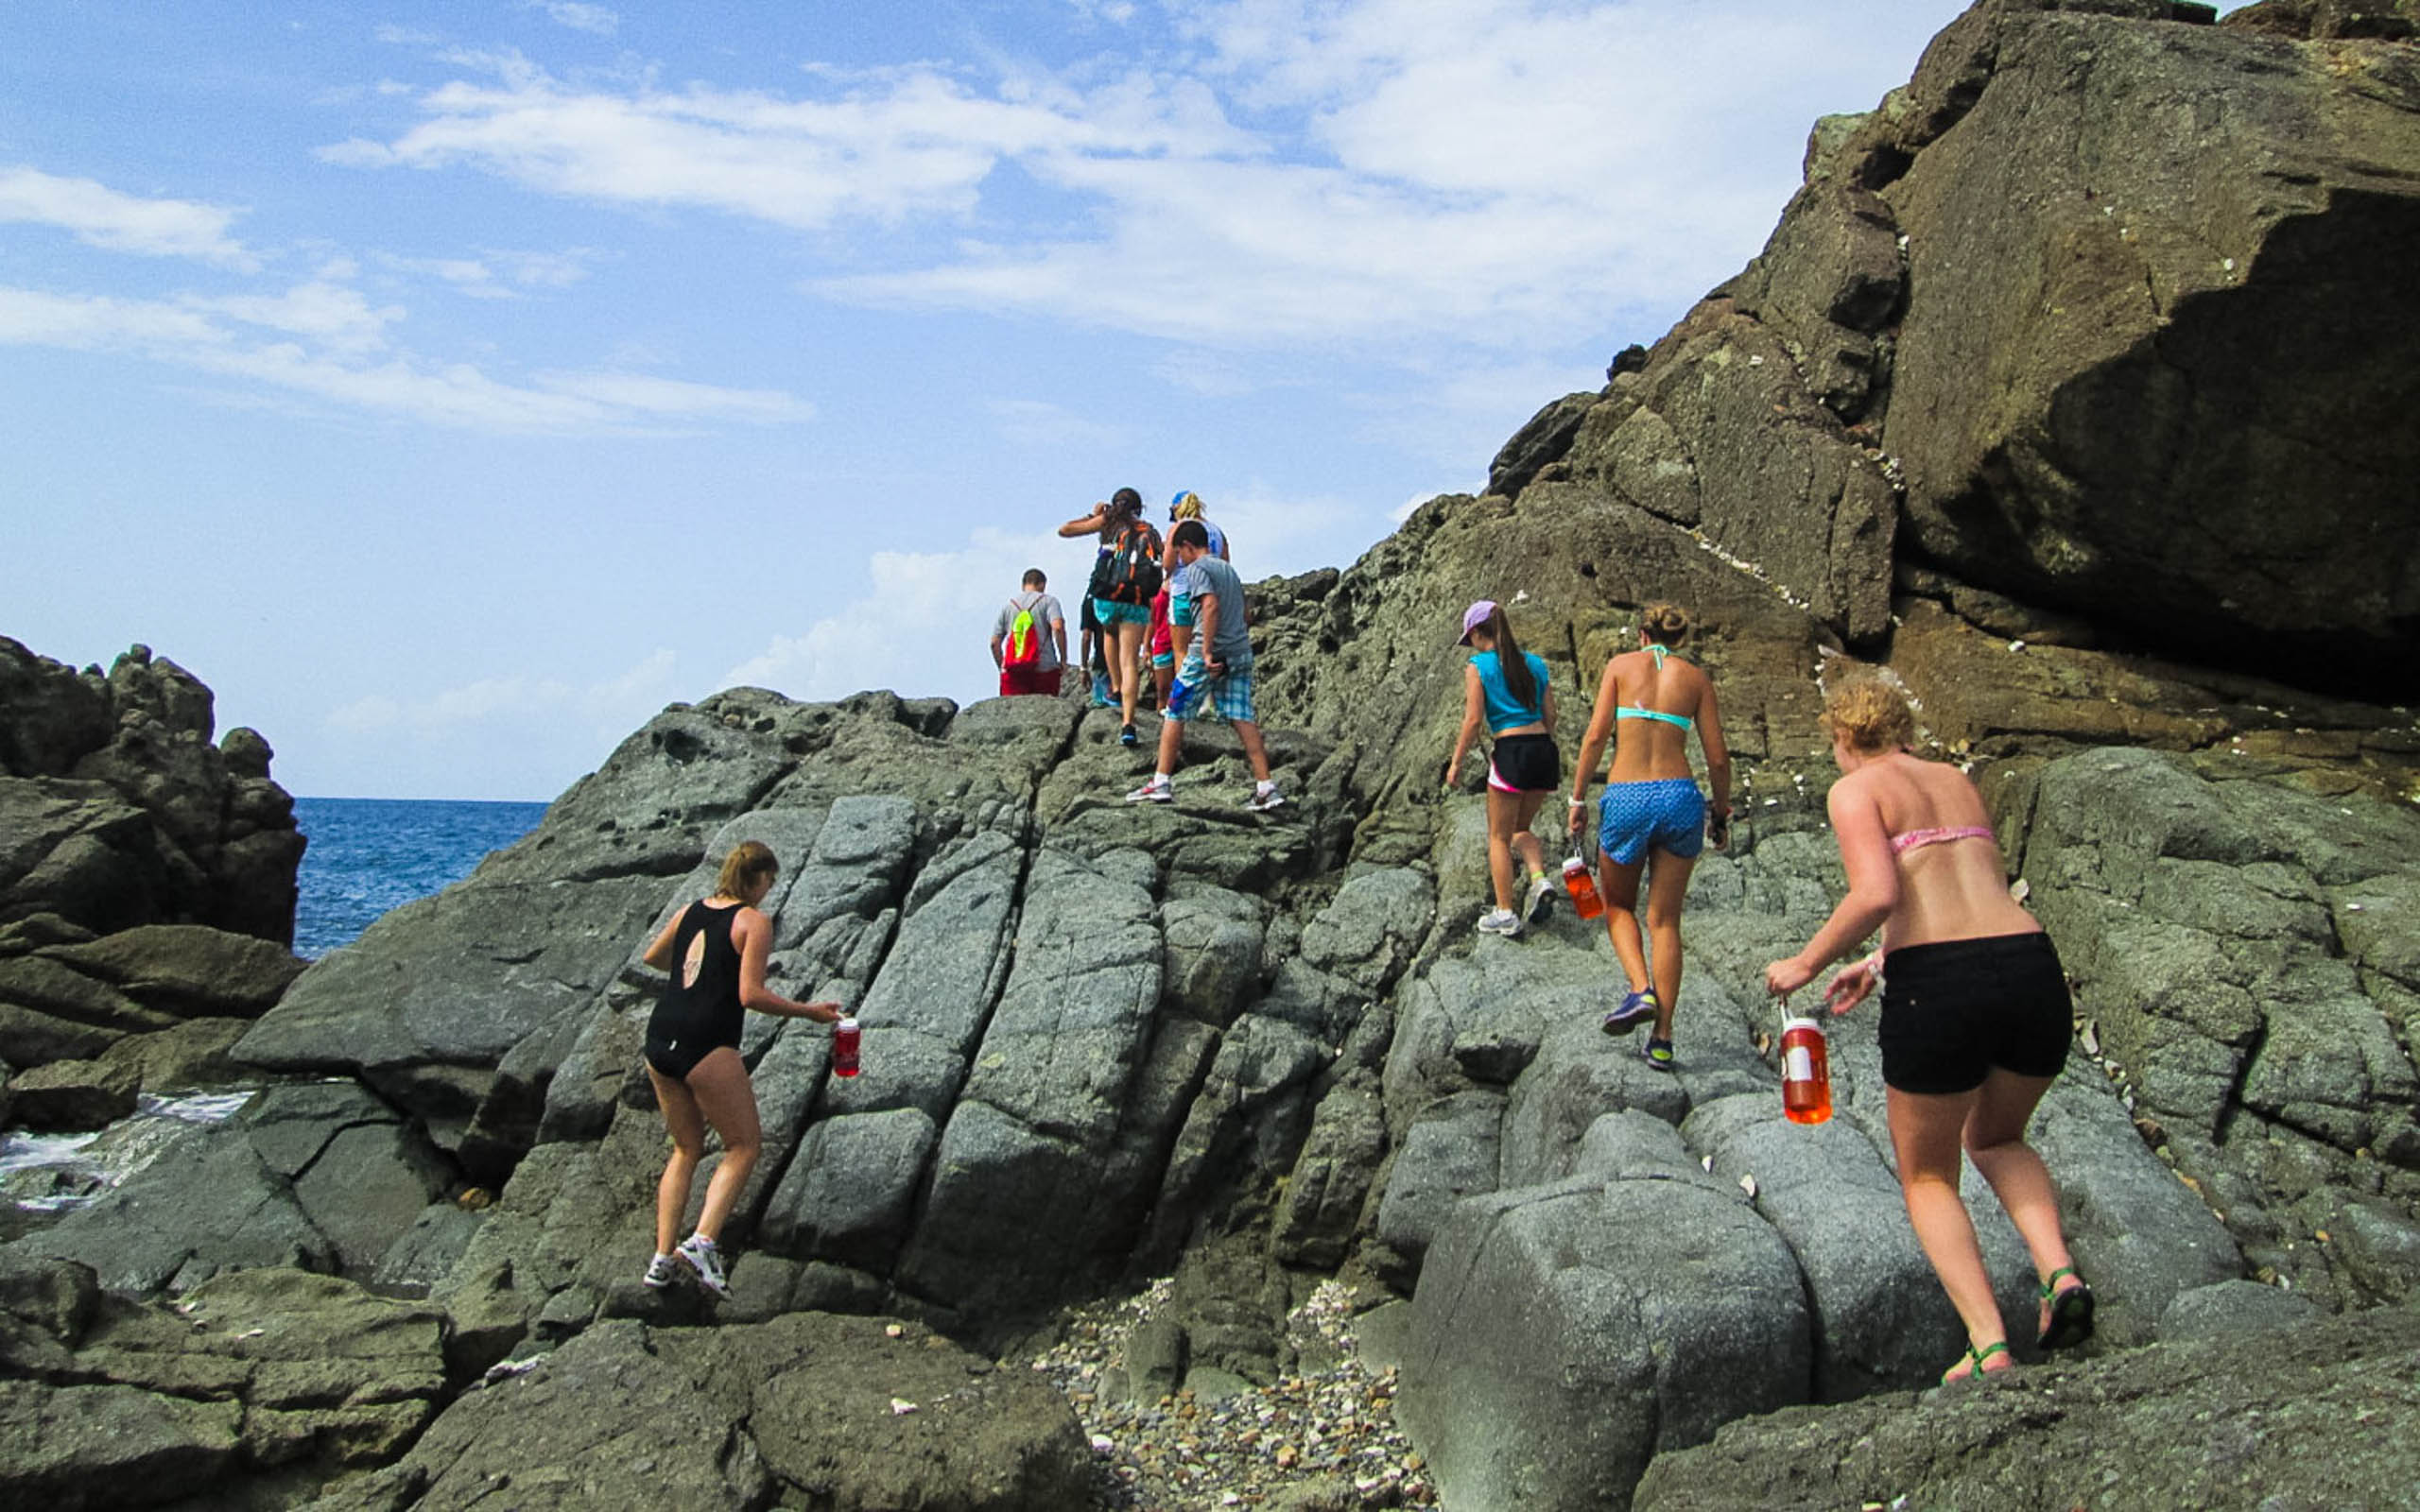 A group of people walking on rocks near the ocean.